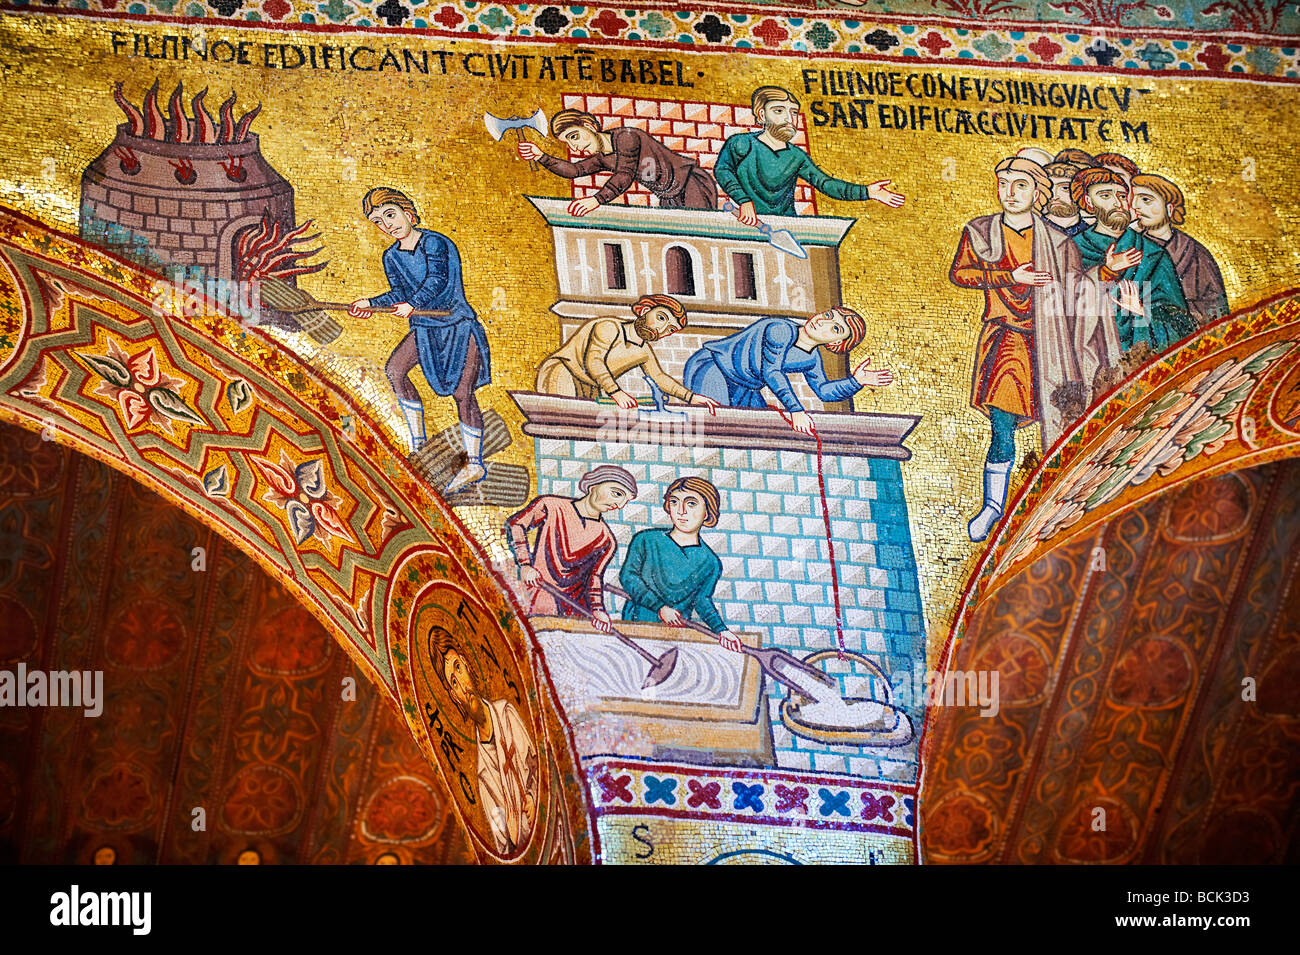 Byzantinischen Mosaiken in der Palantine Kapelle (Cappella Palentina) Norman Palace Palermo, Sizilien, Italien. Christus vor dem Altar. Stockfoto